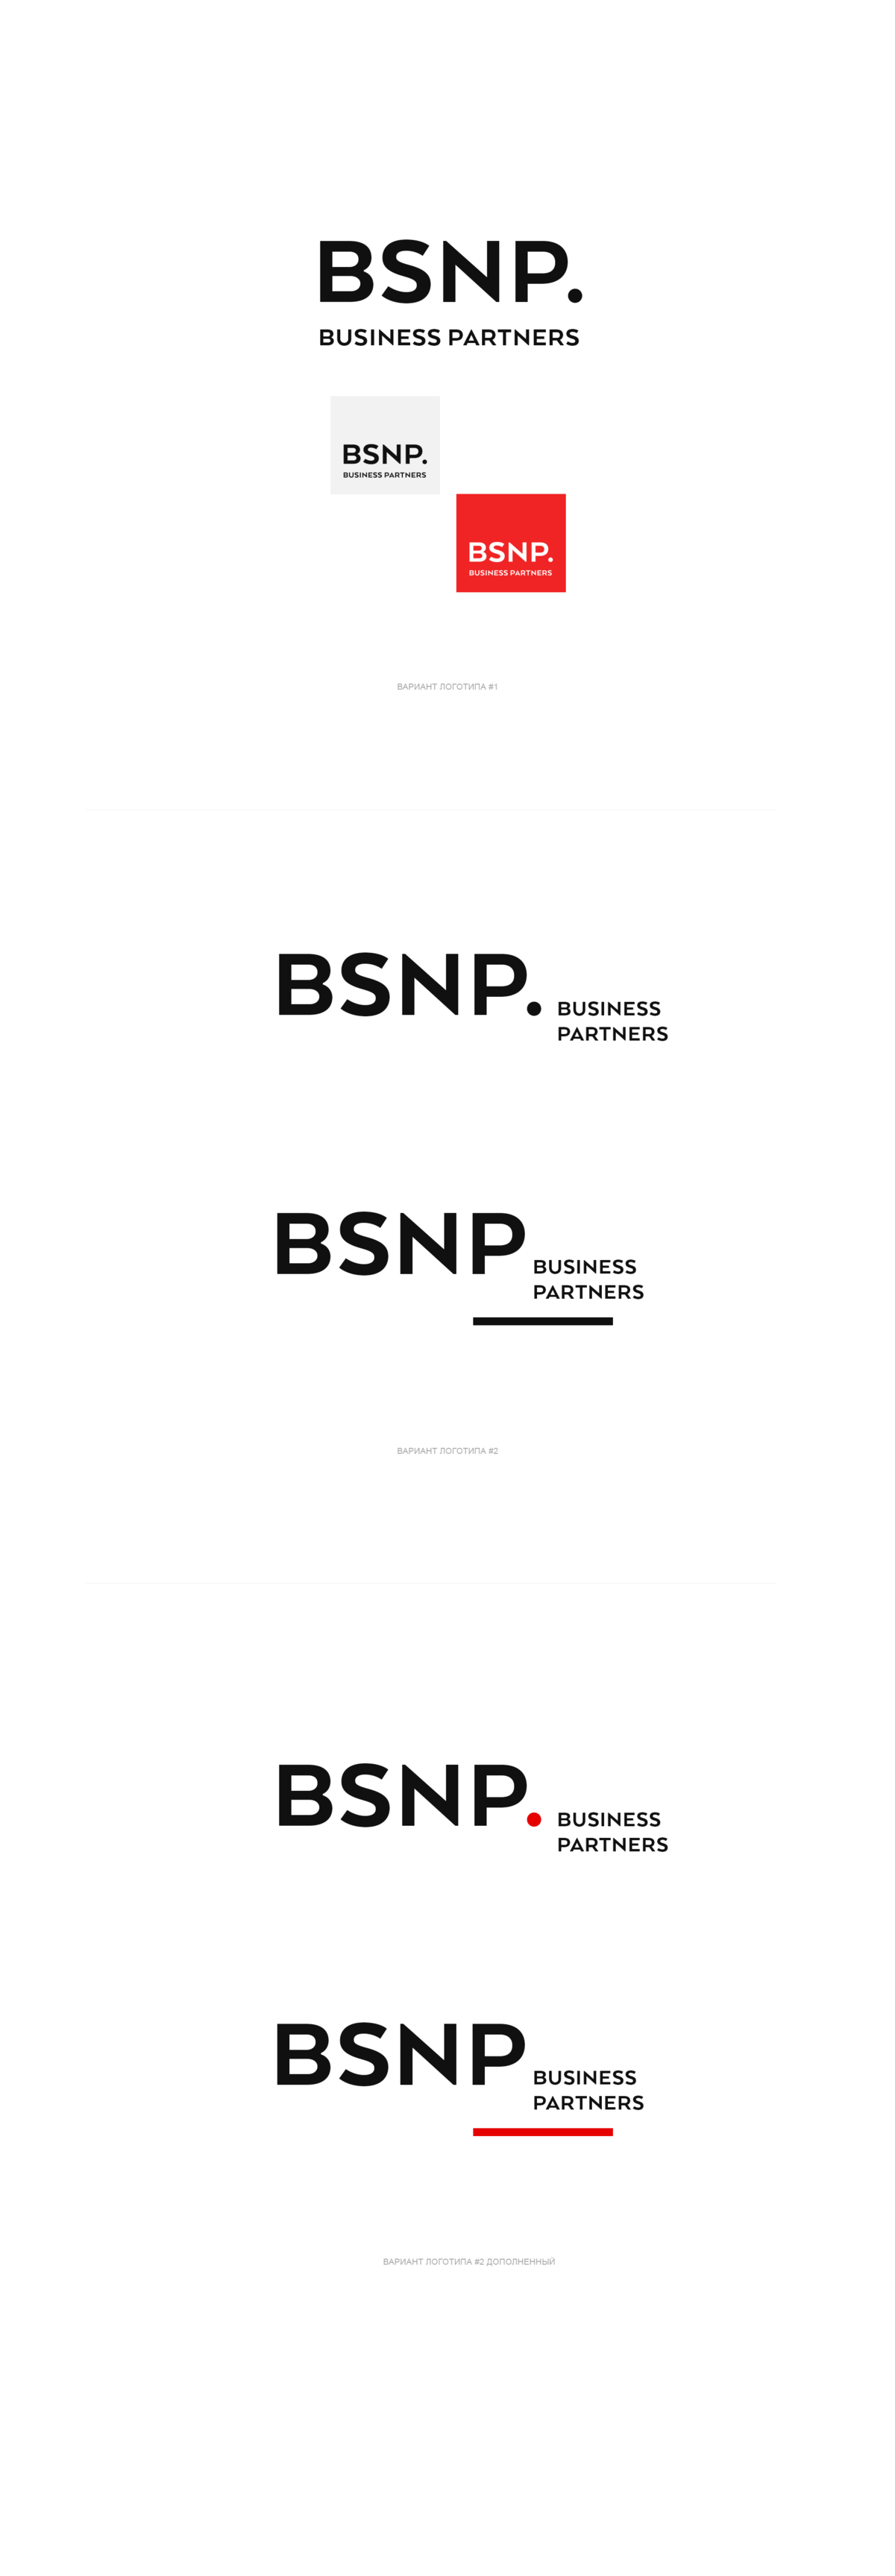 Концепция фирстиля BSNP